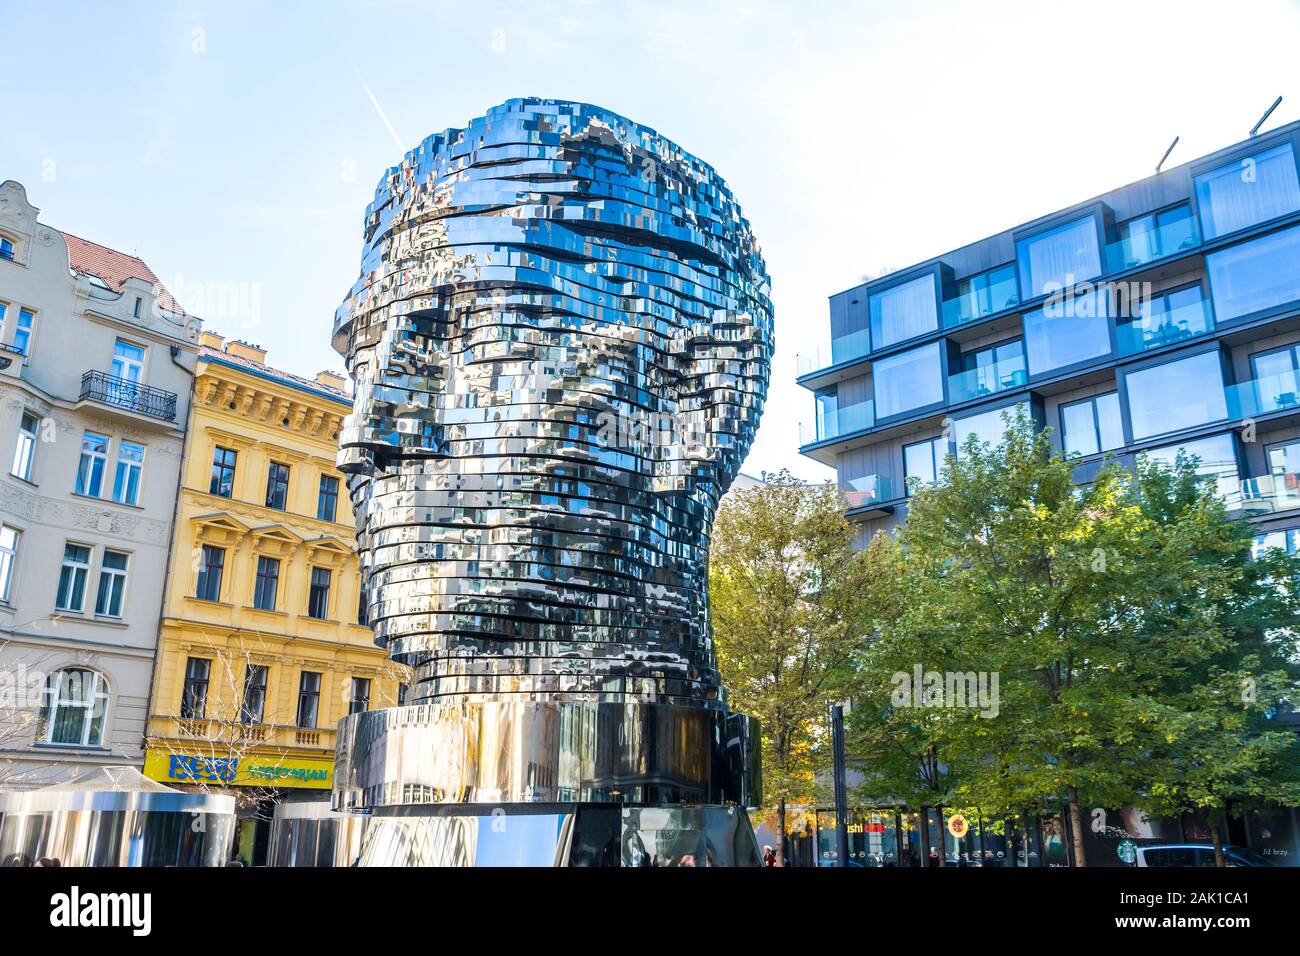 Prag, Tschechische Republik - 26. Oktober 2019: Der Leiter der Franz Kafka, auch bekannt als die Statue von Kafka. Outdoor Skulptur des Künstlers David Cerny, situat Stockfoto